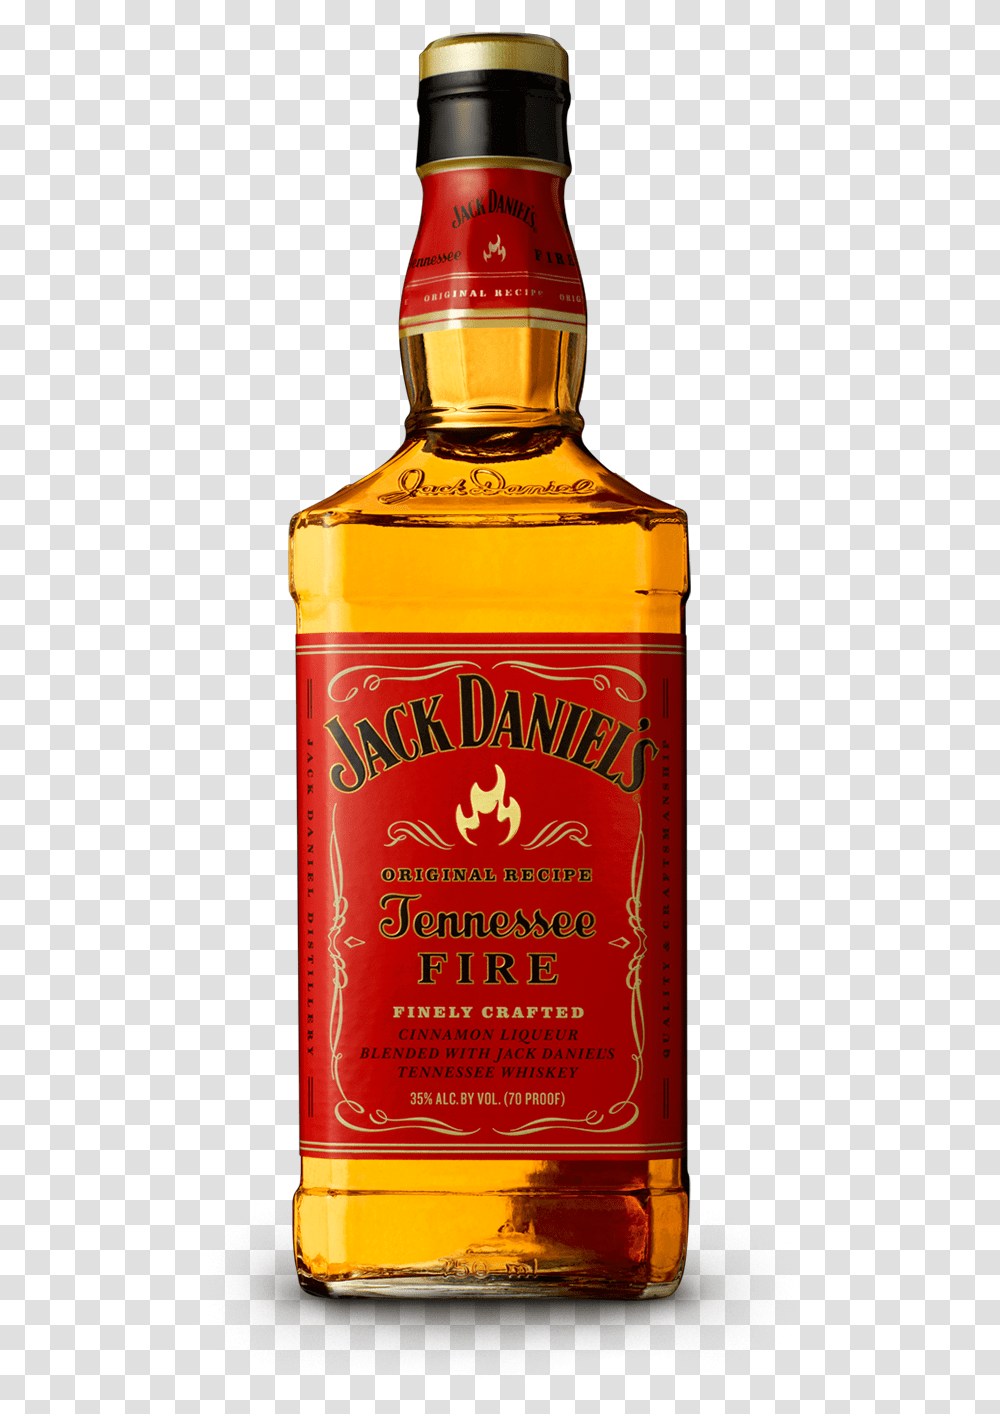 Download Jack Daniel's Tennessee Fire Jack Daniels Fire Jack Daniels Tailfire, Liquor, Alcohol, Beverage, Drink Transparent Png